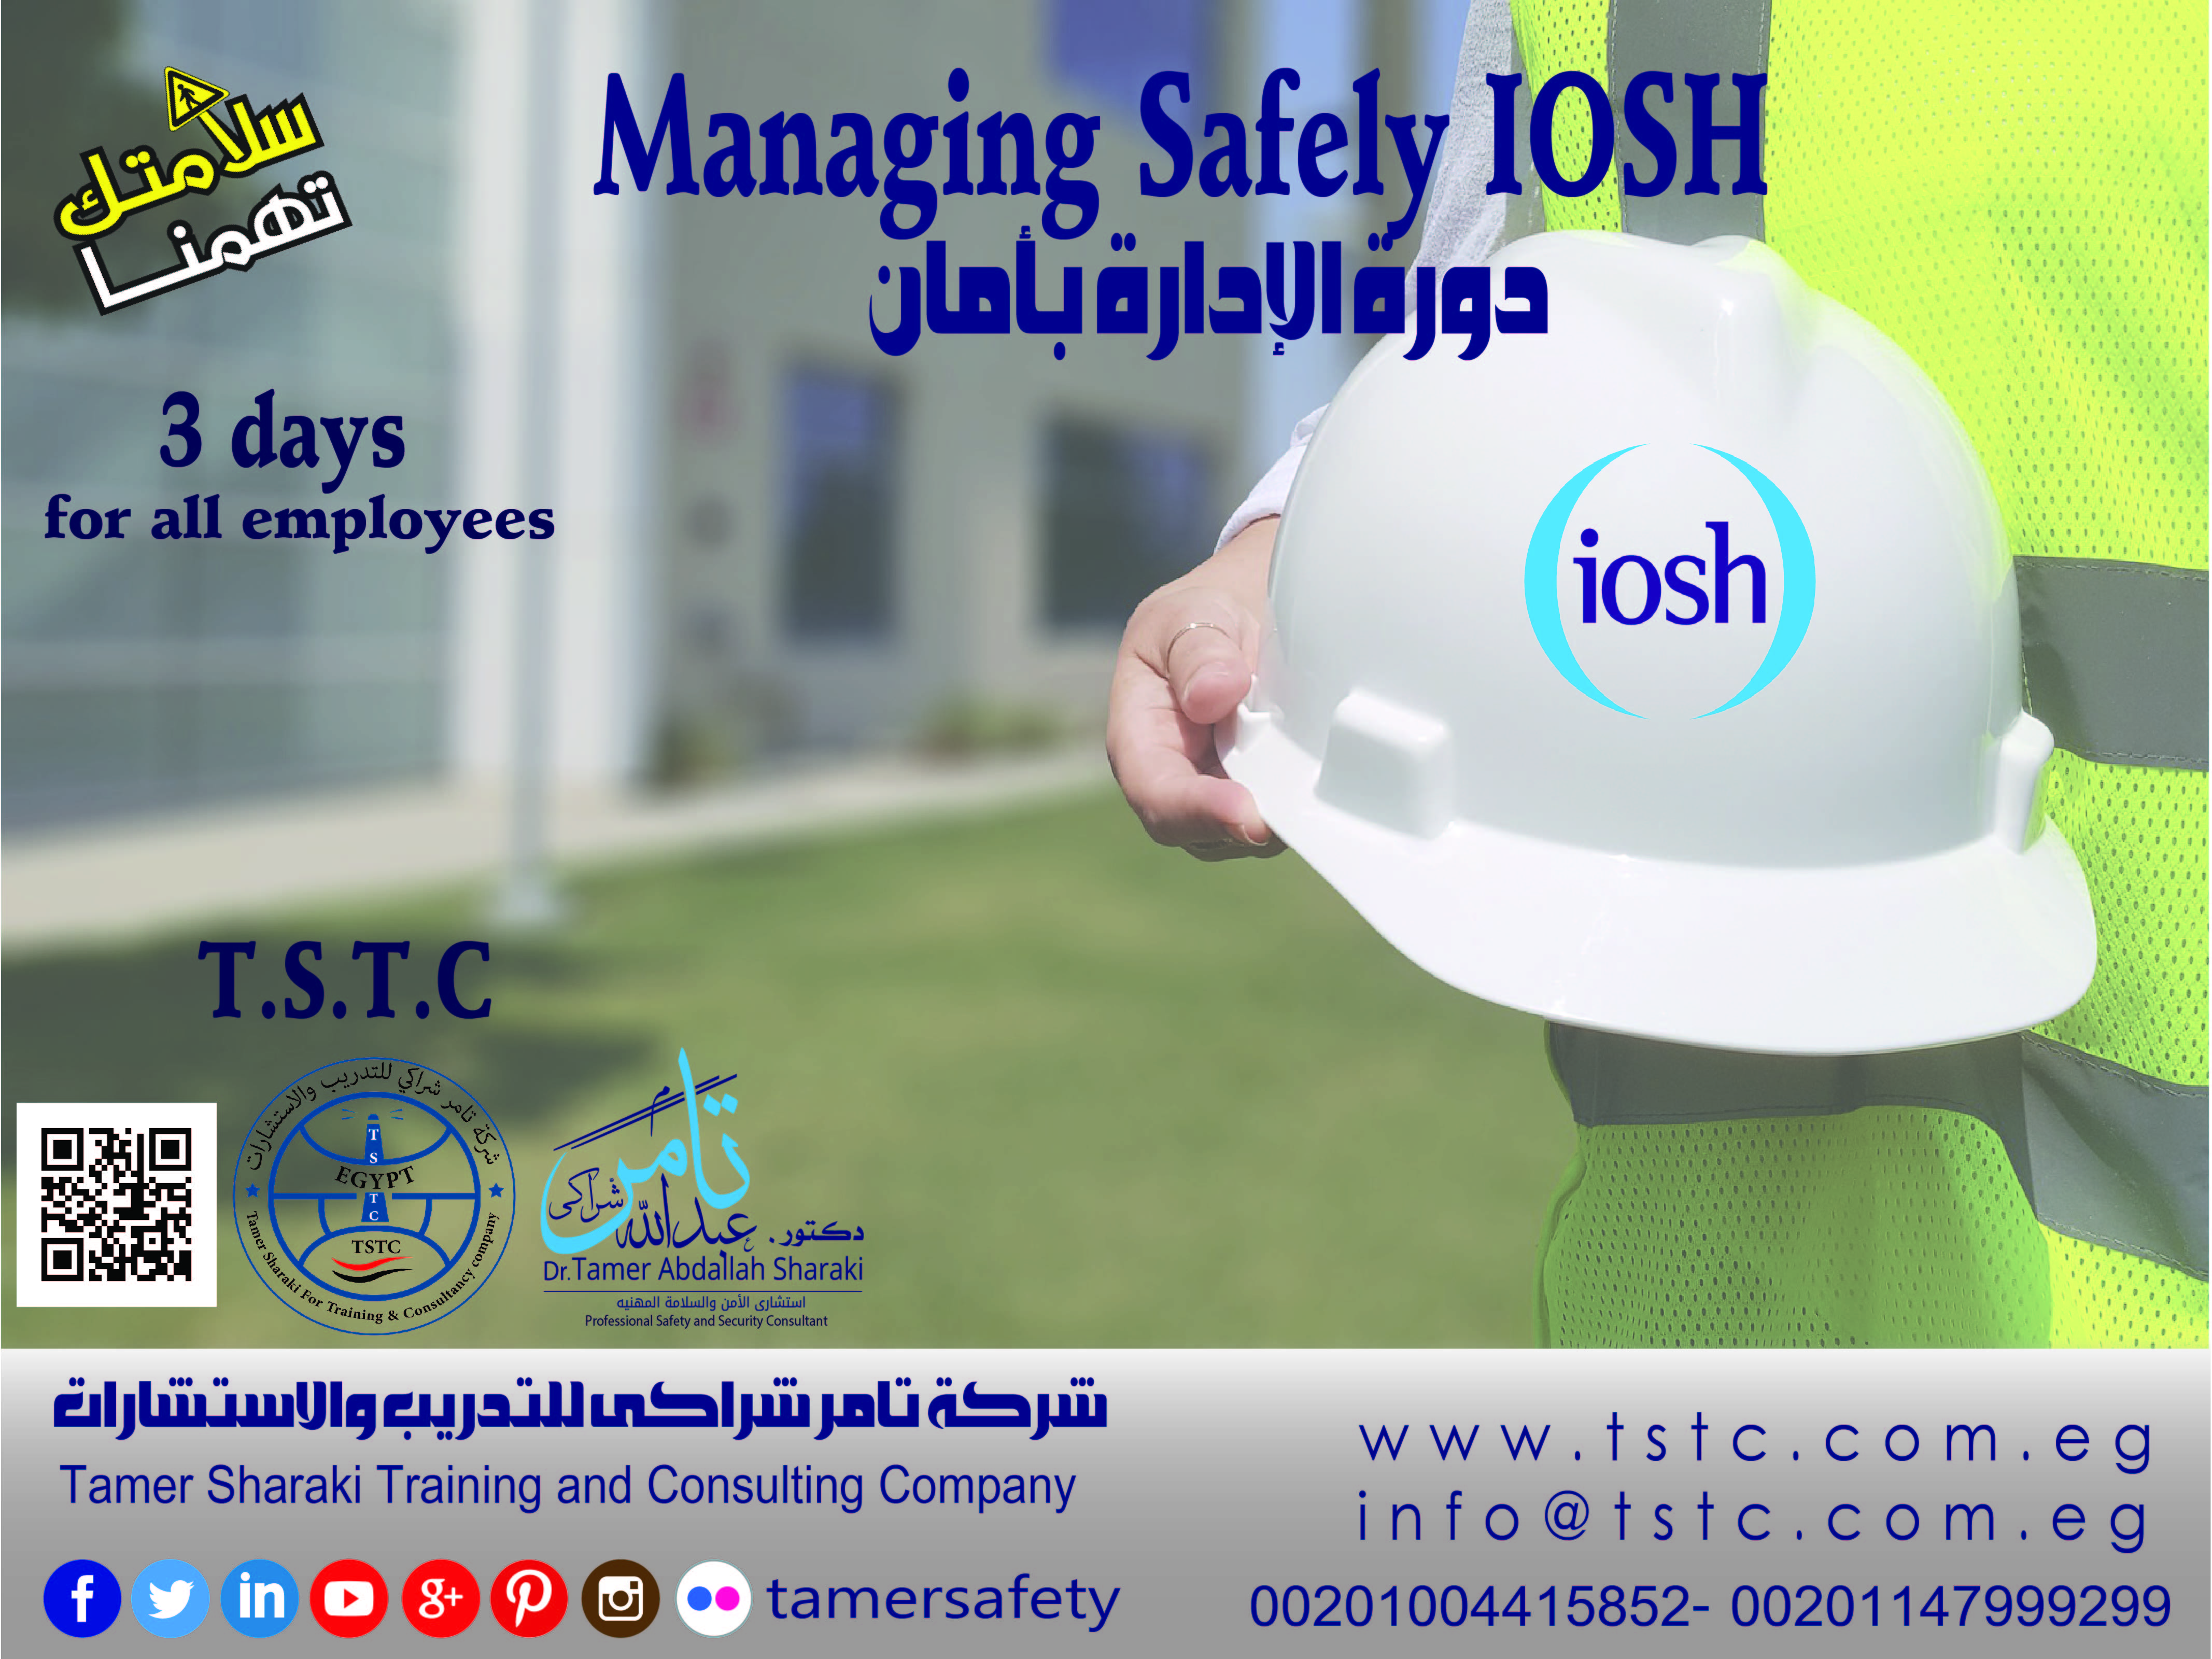 دورة الإدارة بأمان Managing Safely IOSH